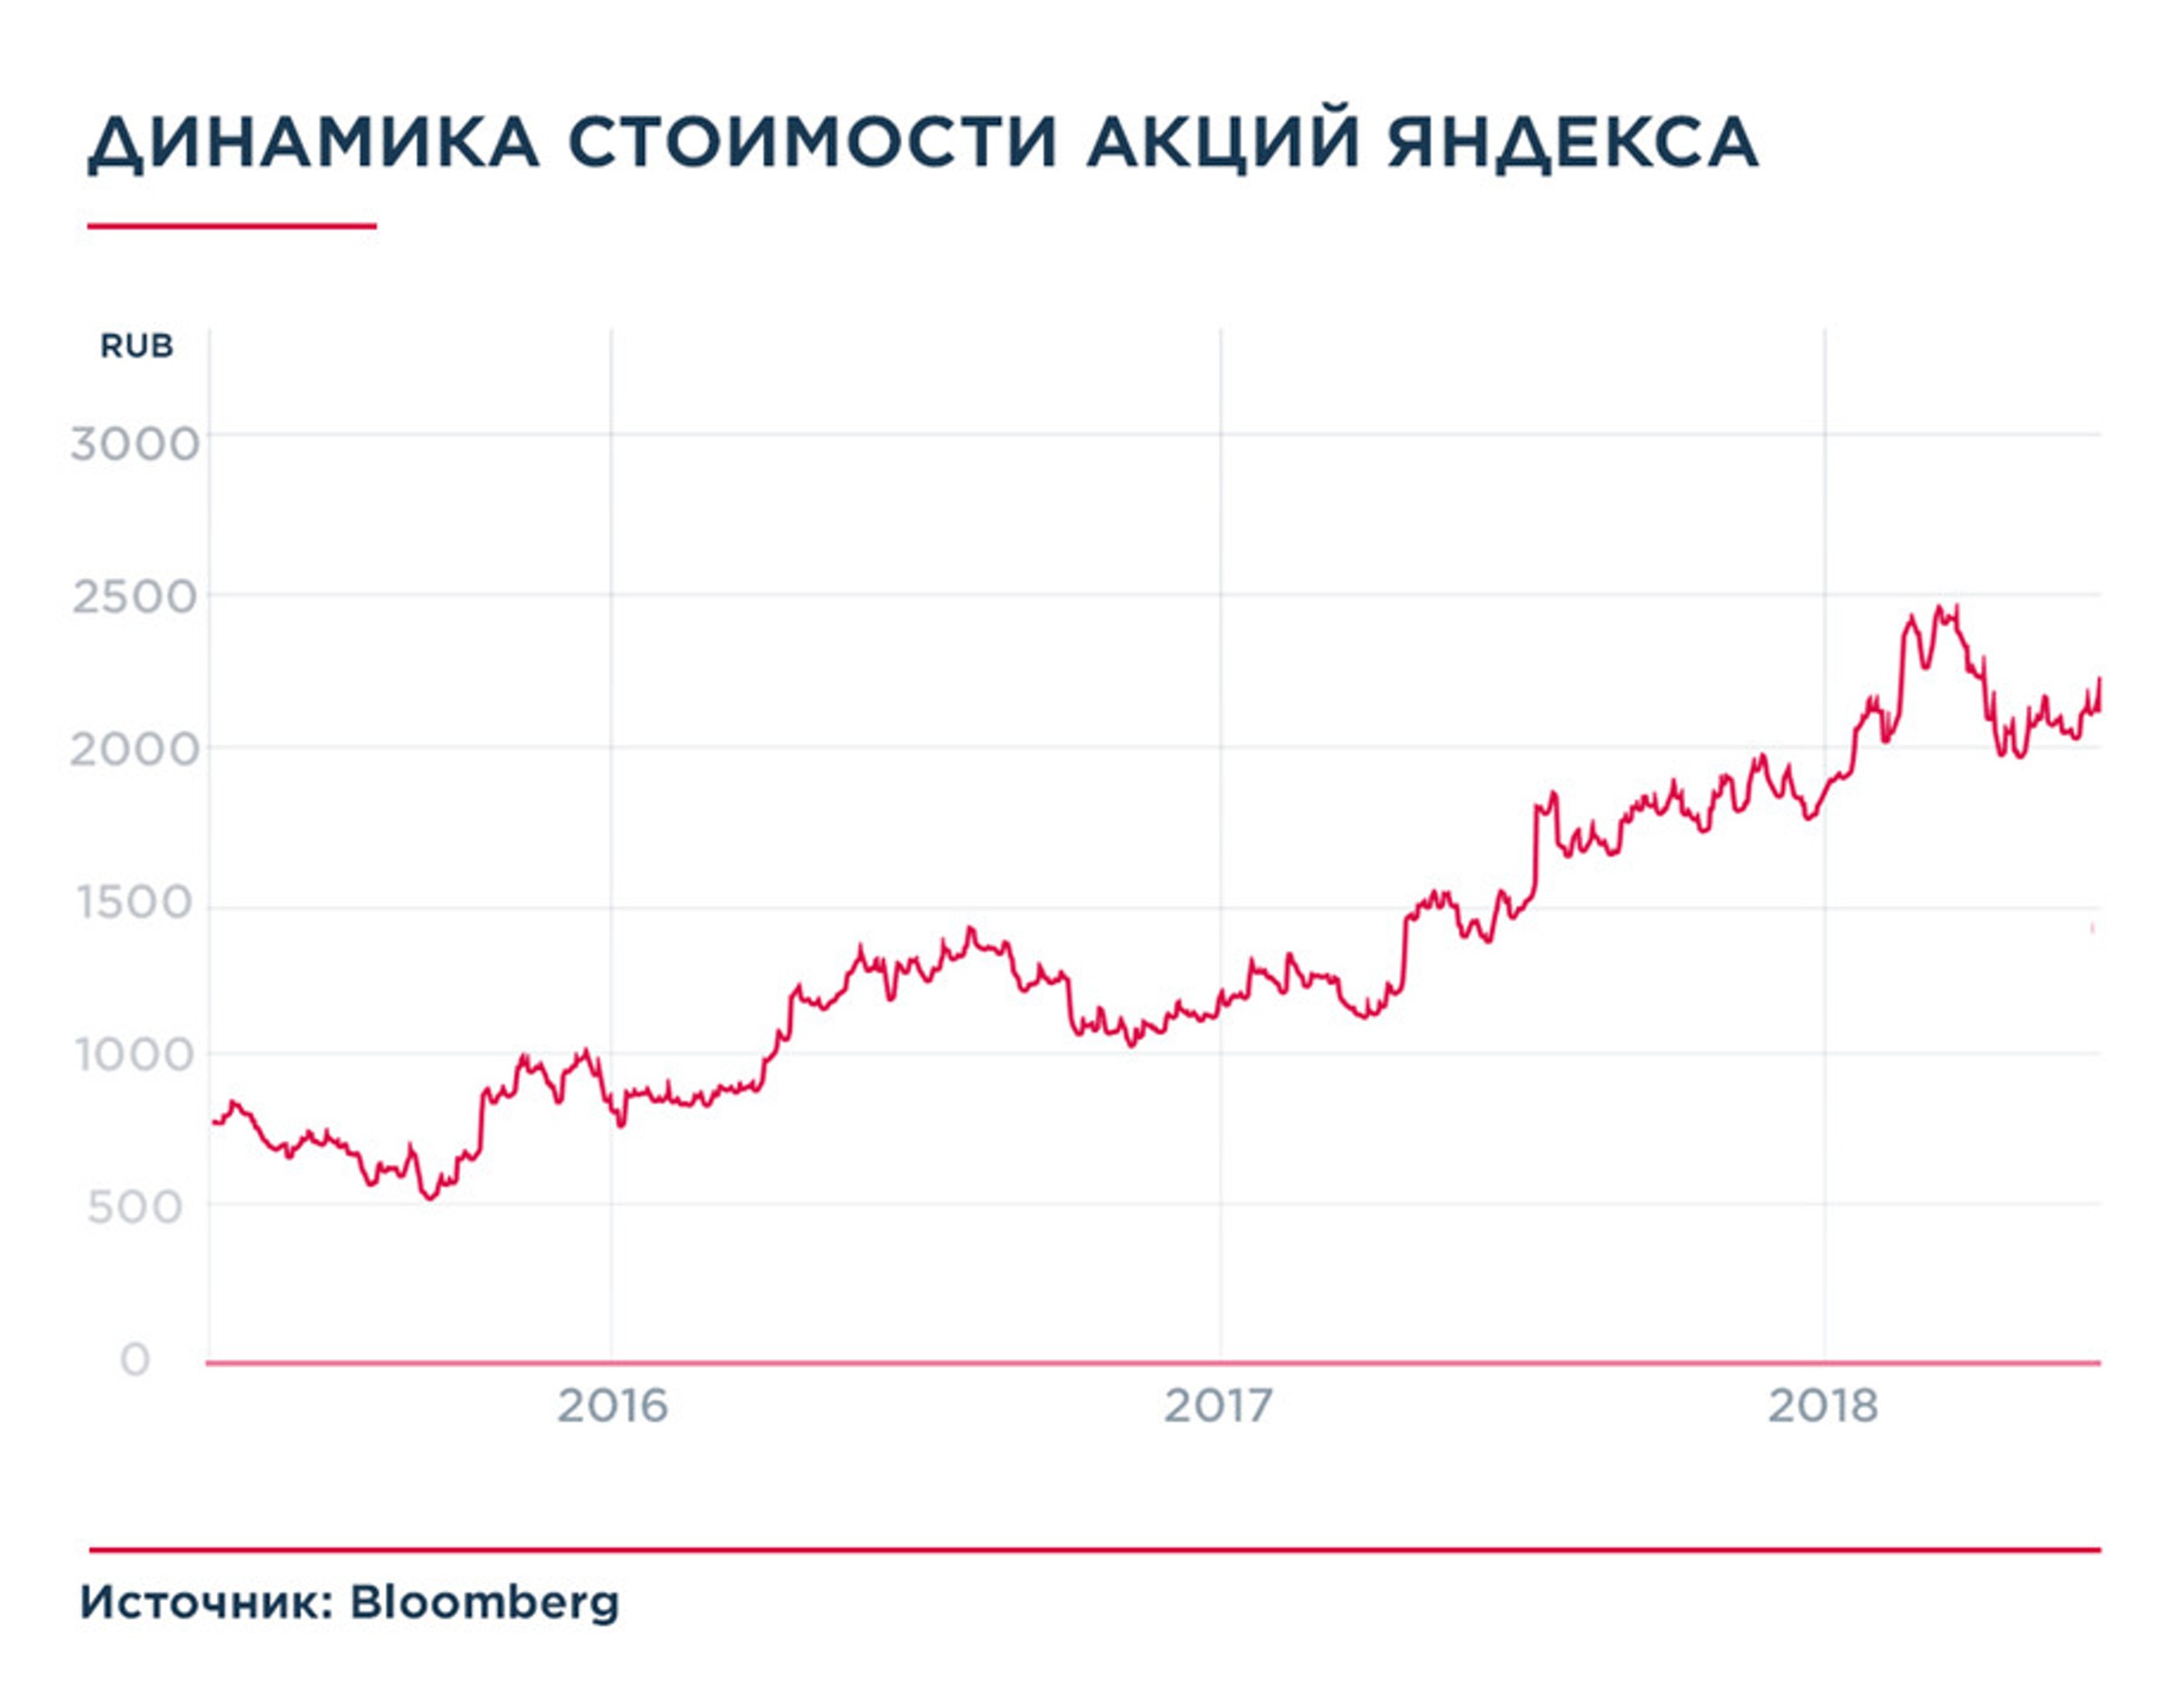 Коррекция акций Яндекса - признак оздоровления